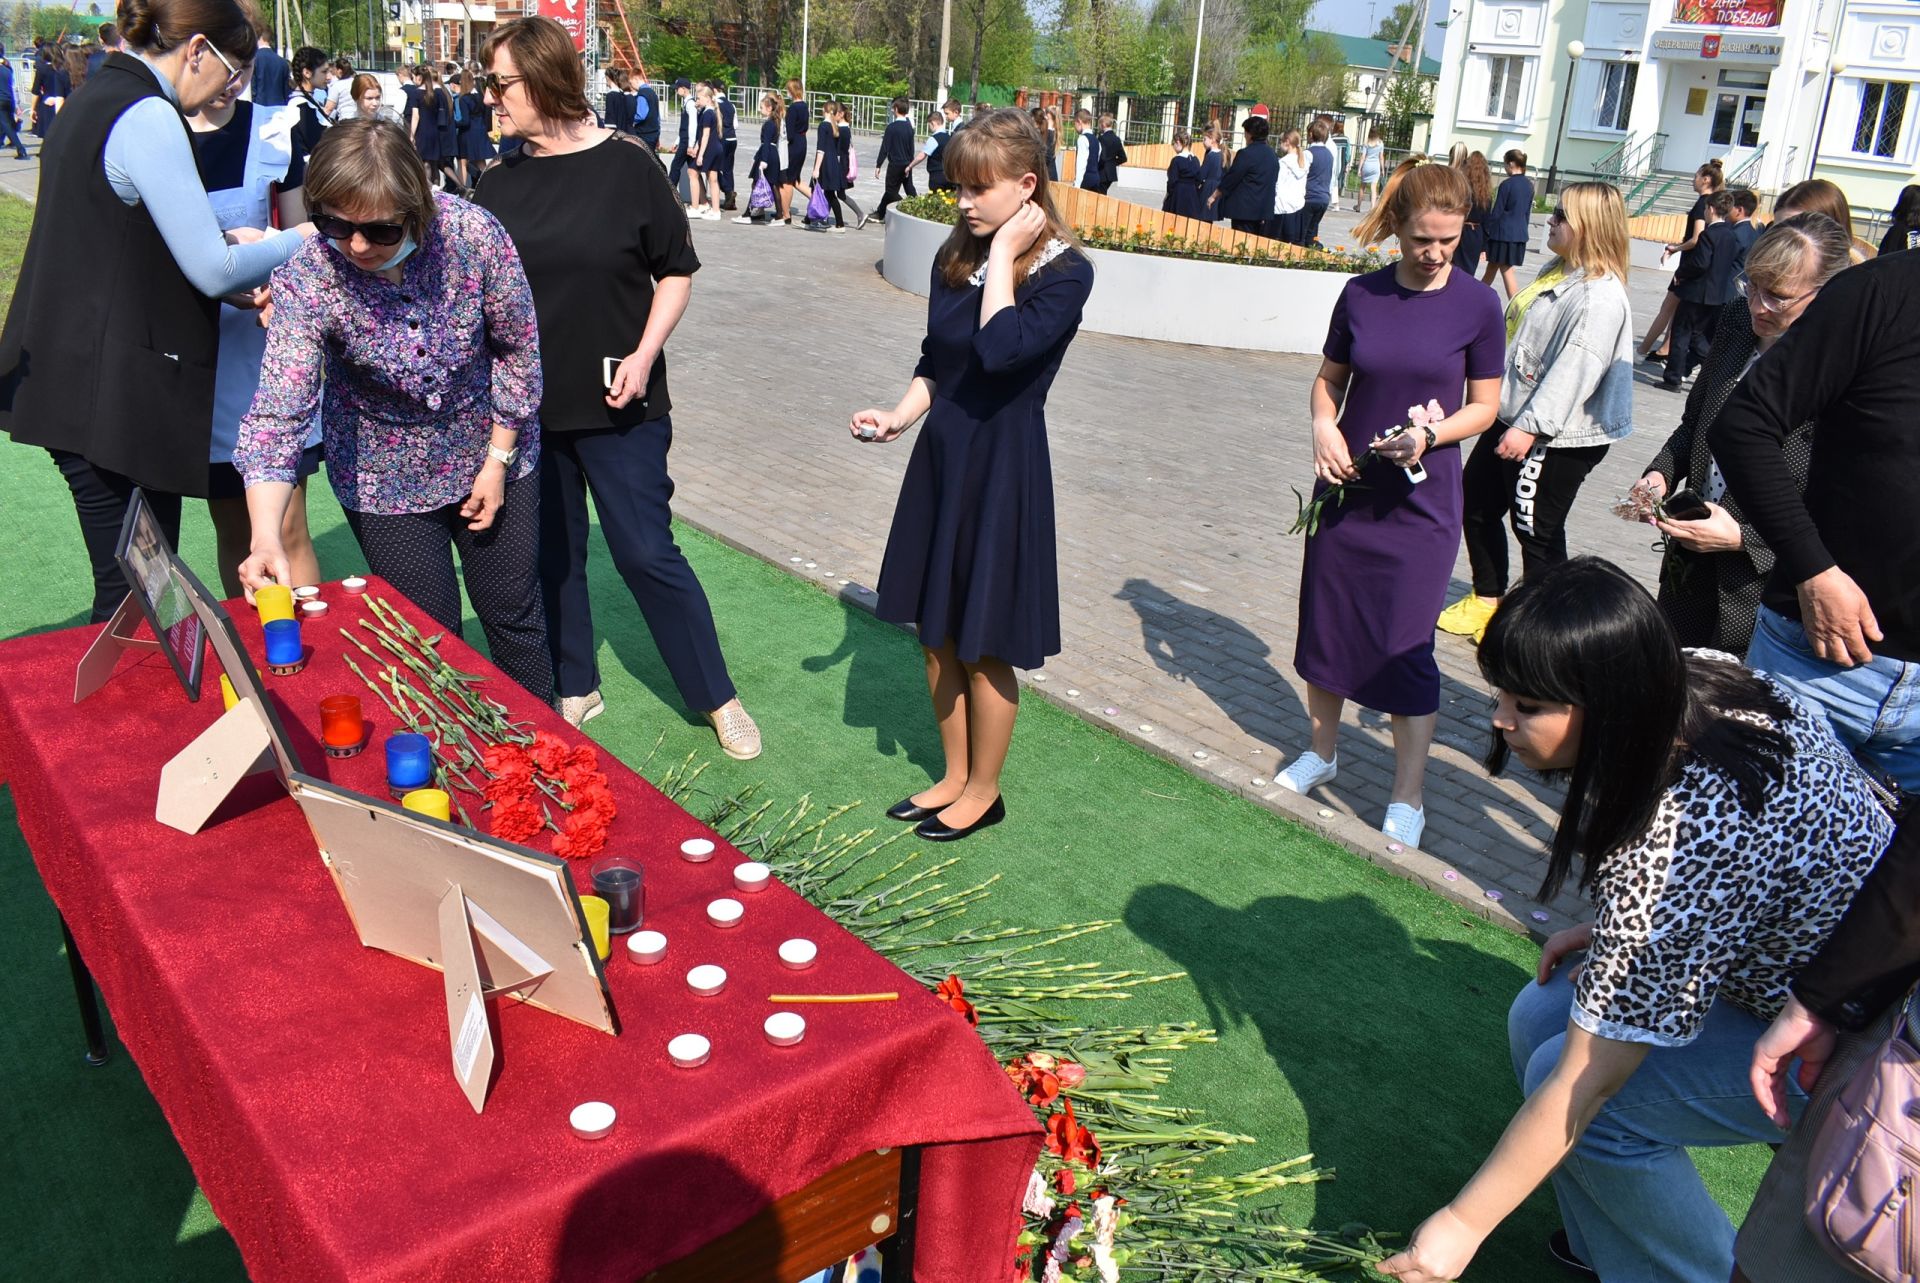 Ученики второй школы провели митинг в память о погибших в казанской школе